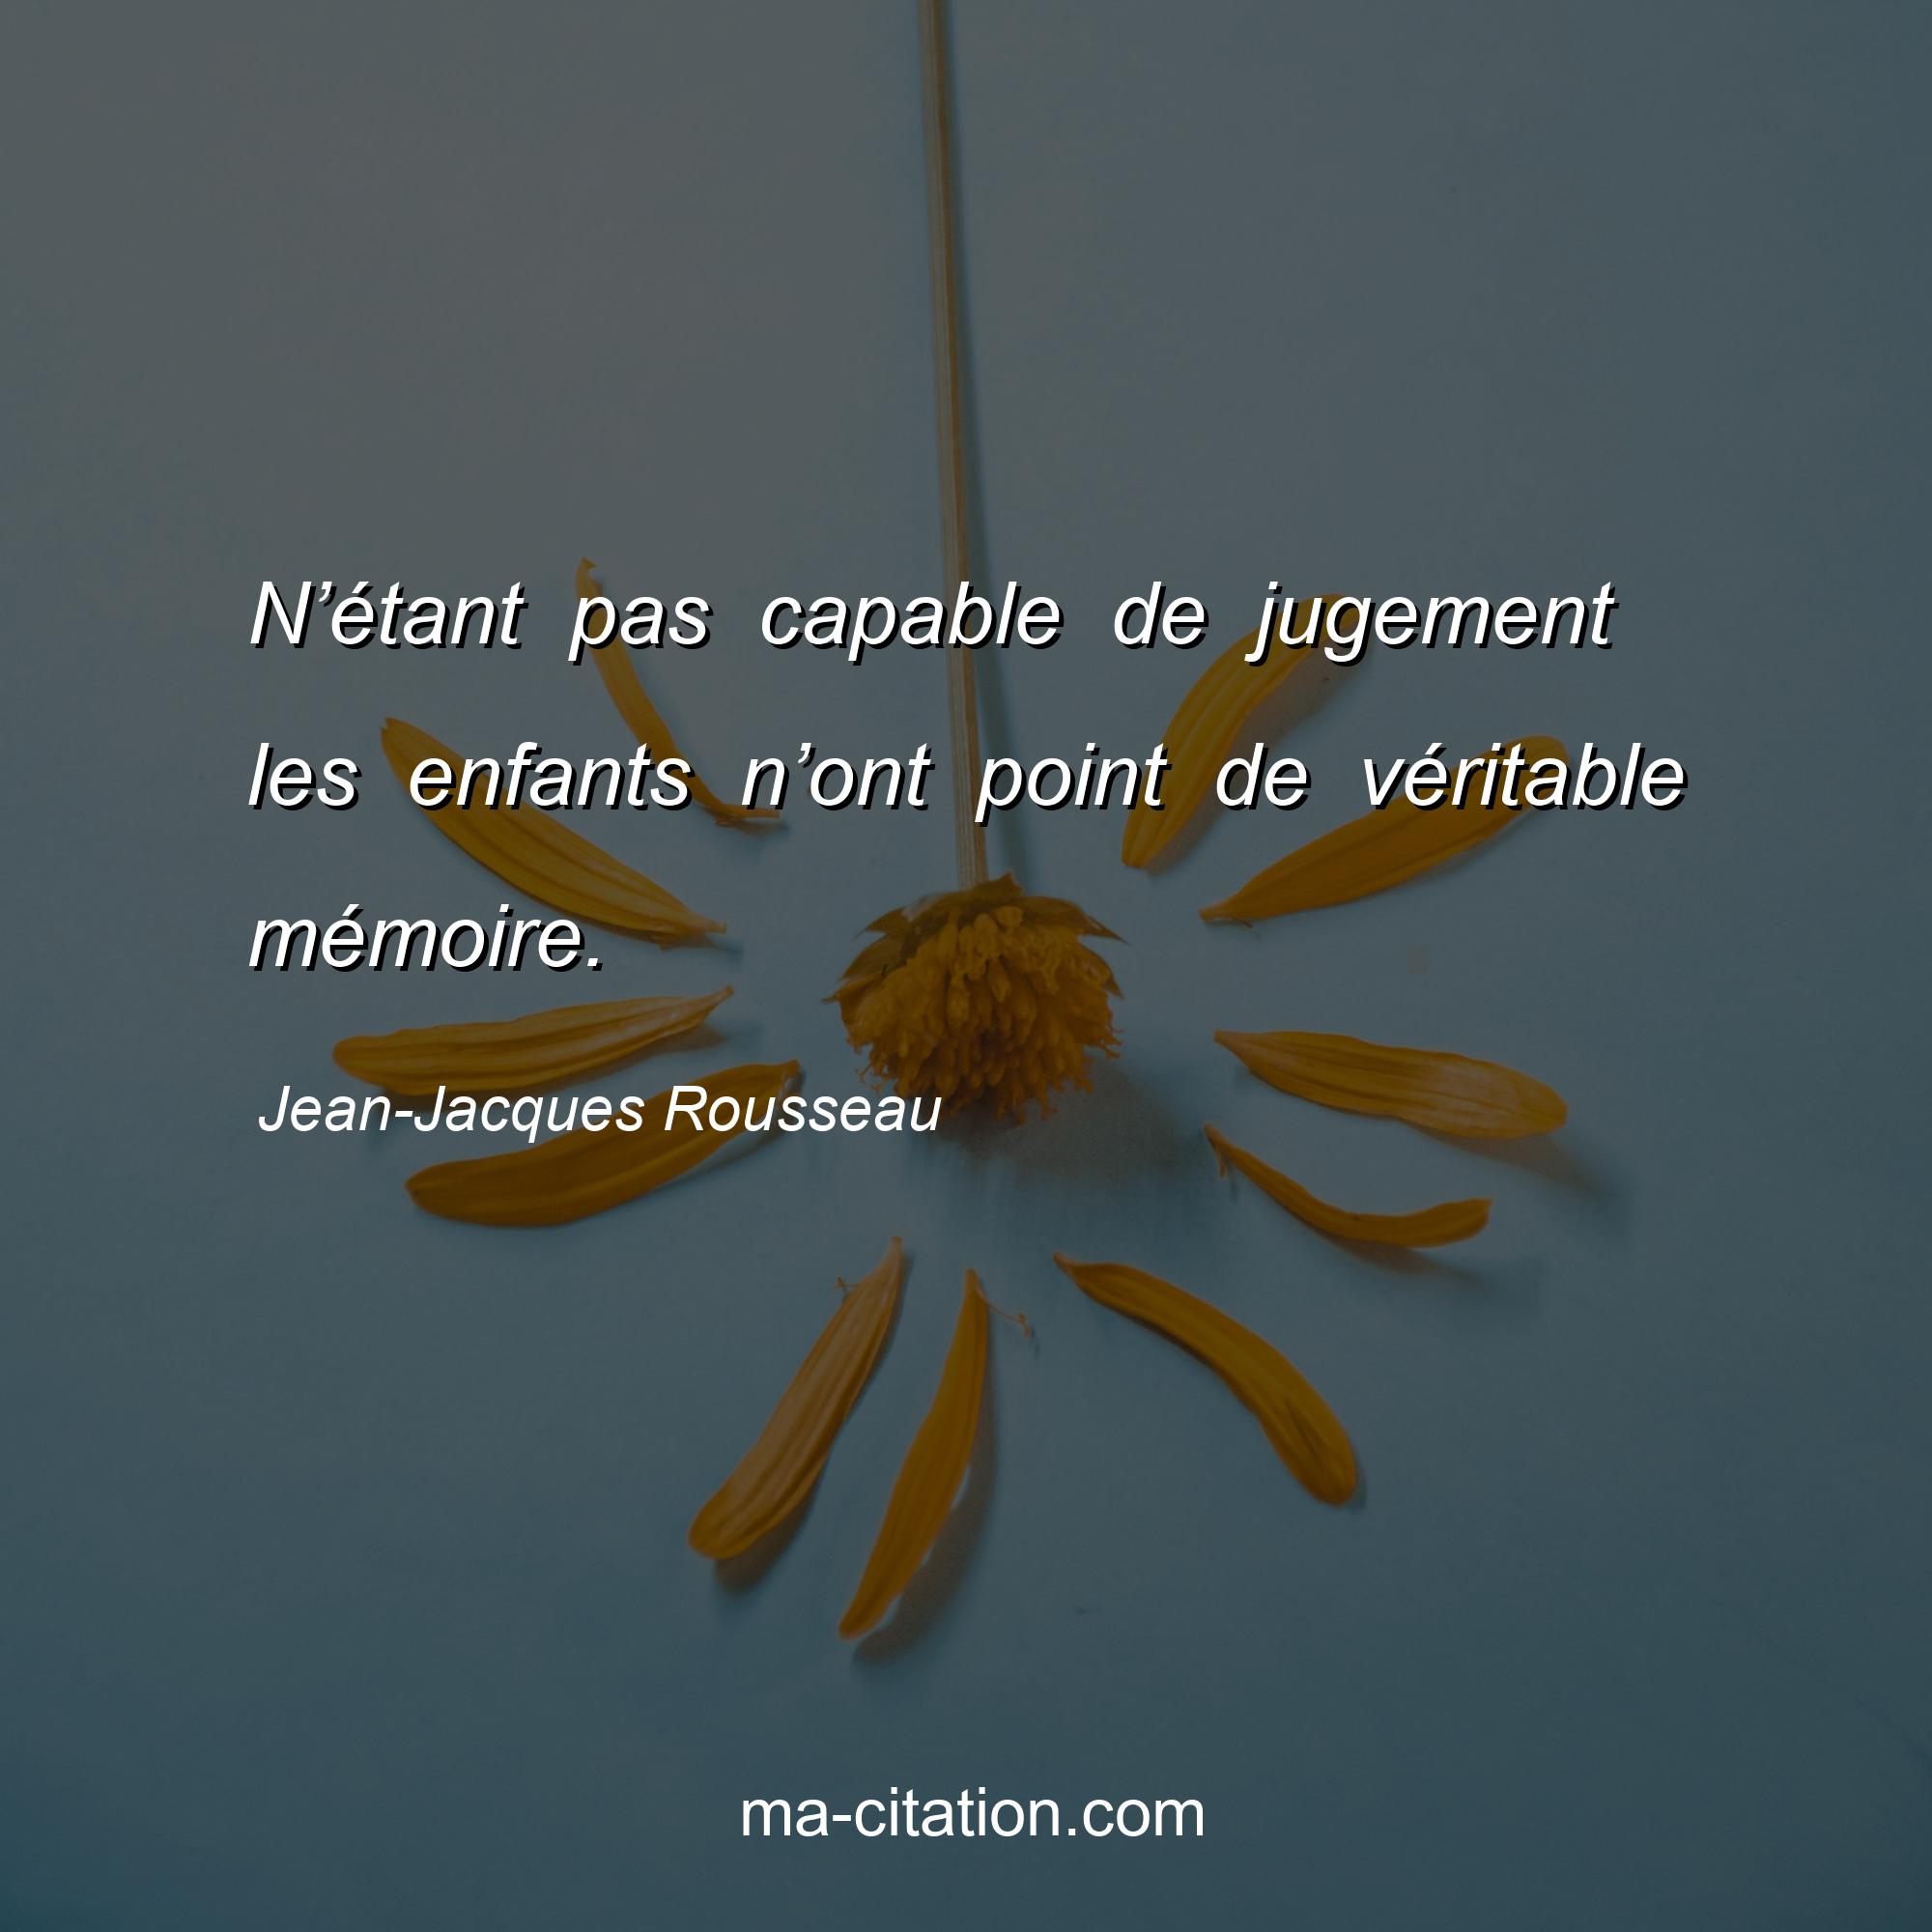 Jean-Jacques Rousseau : N’étant pas capable de jugement les enfants n’ont point de véritable mémoire.